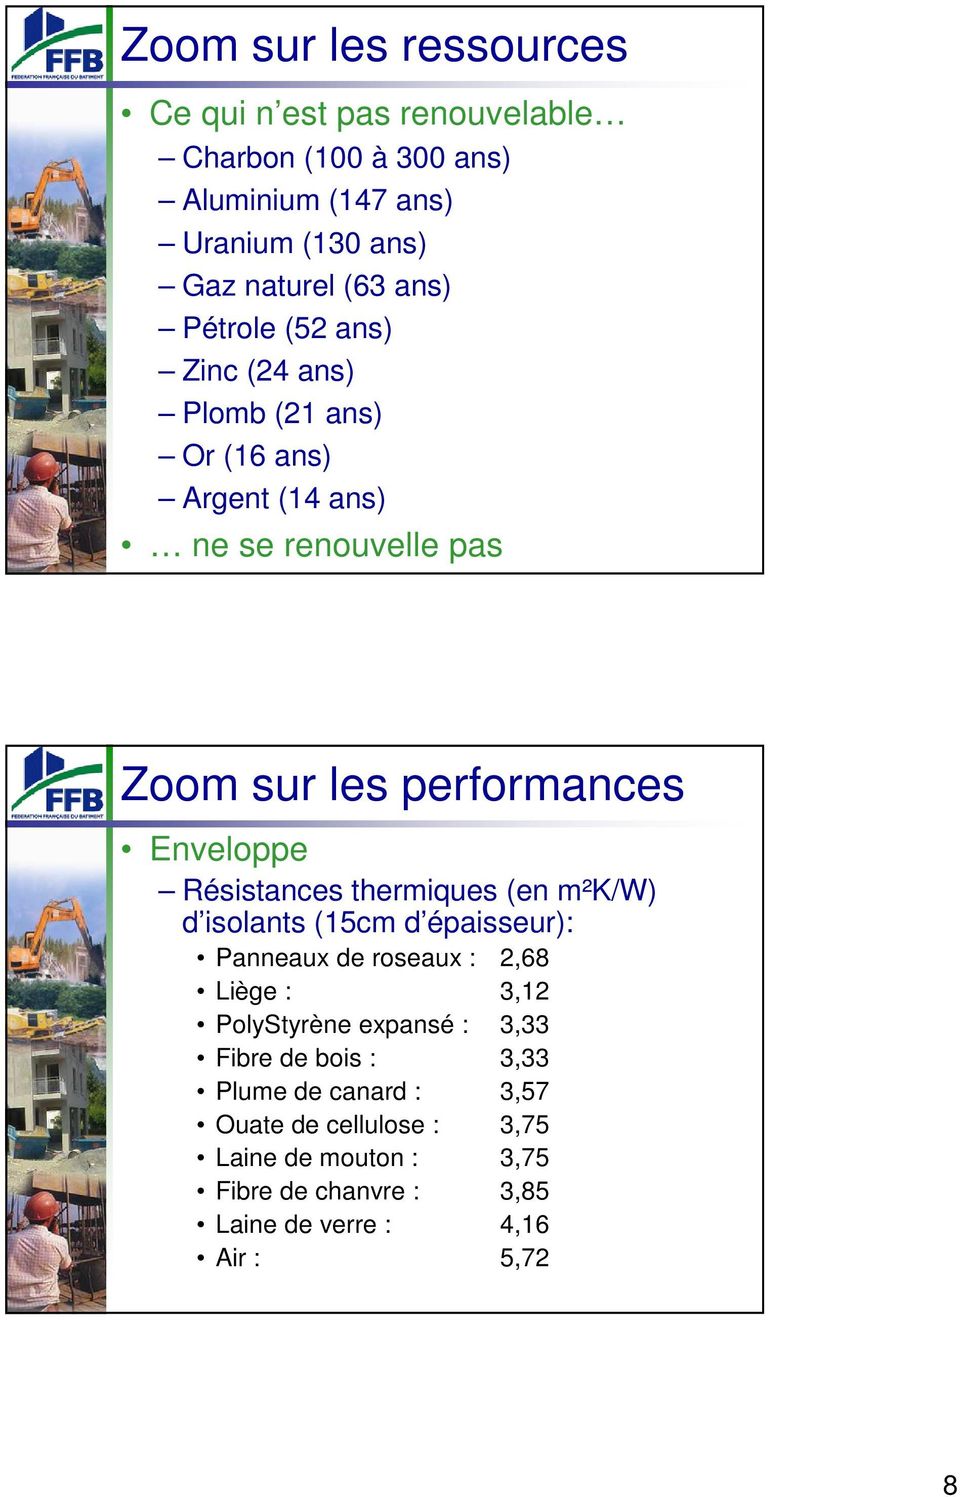 Résistances thermiques (en m²k/w) d isolants (15cm d épaisseur): Panneaux de roseaux : 2,68 Liège : 3,12 PolyStyrène expansé : 3,33 Fibre